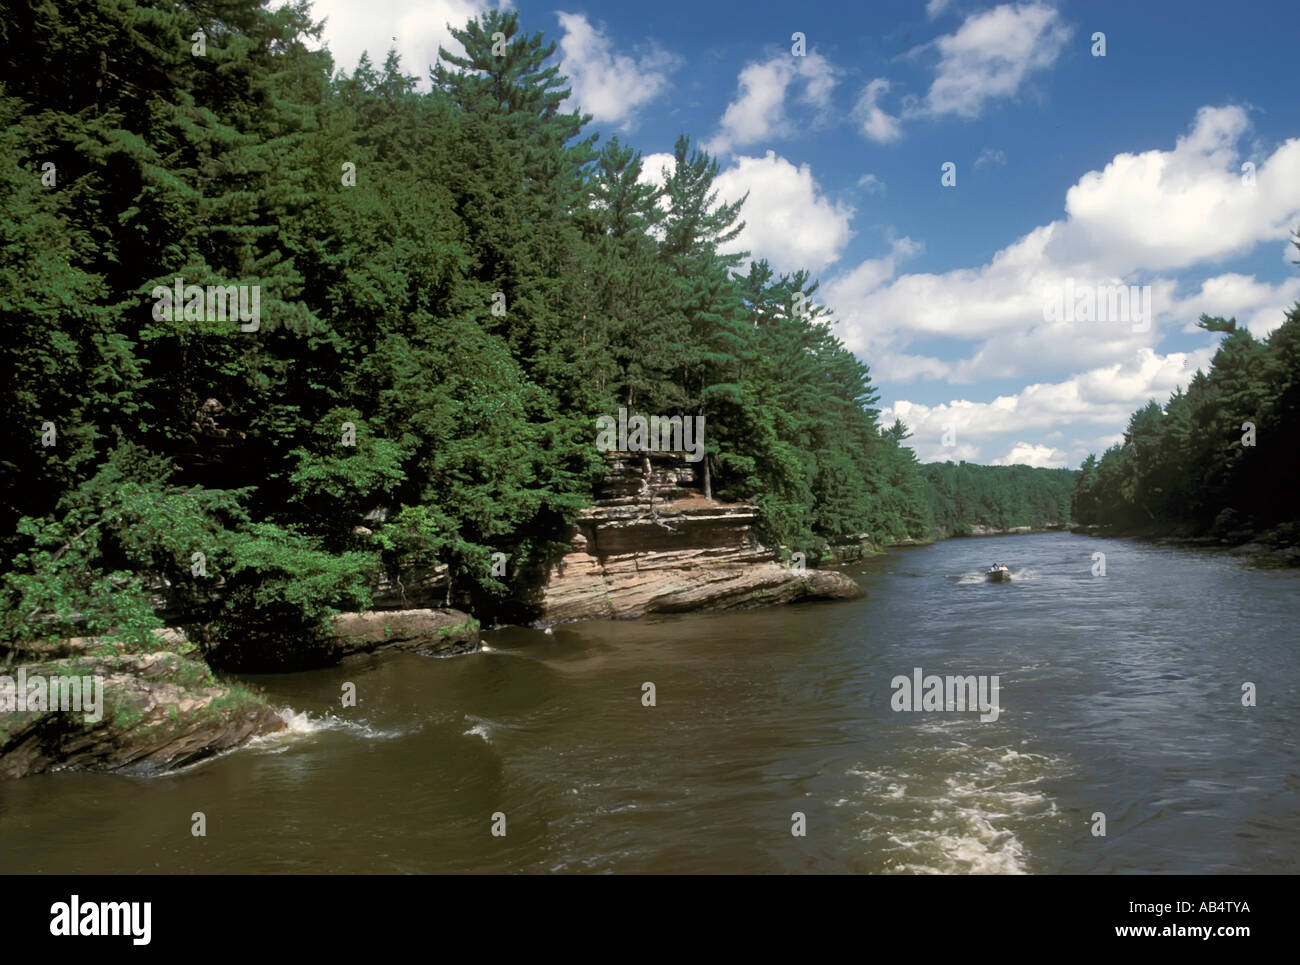 La navigation de plaisance et d'autres formes d'activités récréatives sur la rivière Wisconsin à Wisconsin Dells WI Banque D'Images